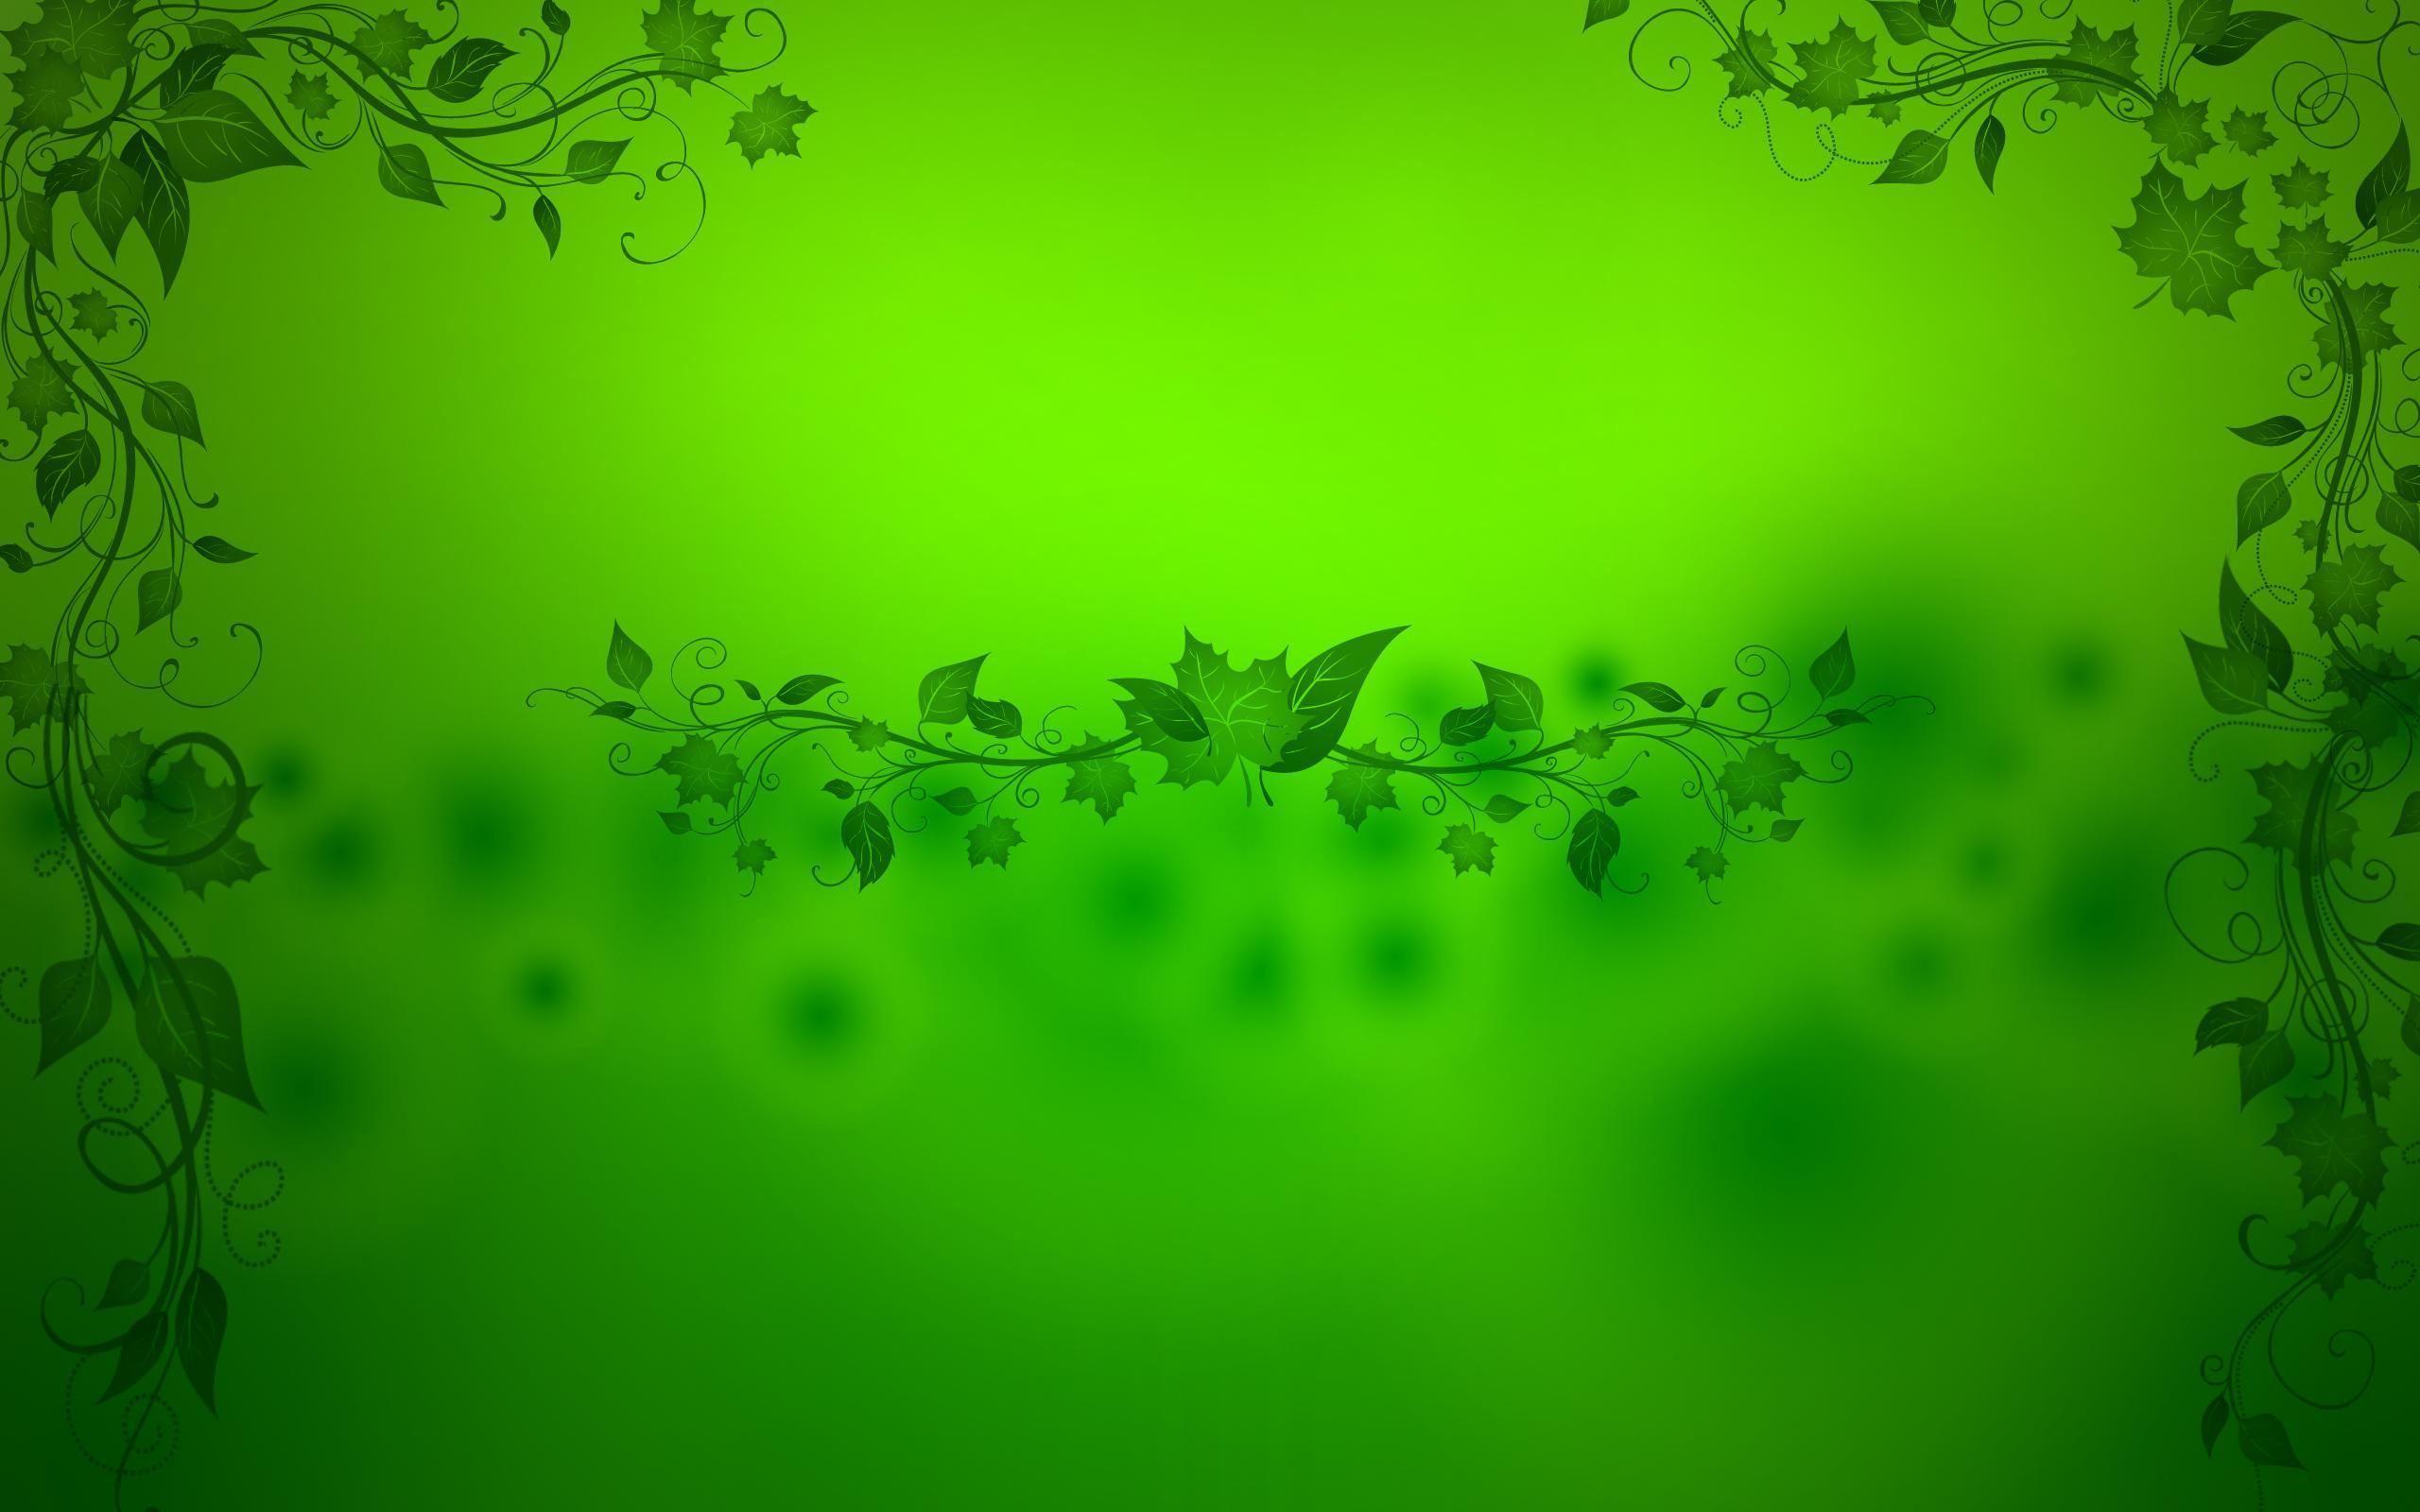 Green Wallpaper High Resolution Wallpaper. awshdwallpaper